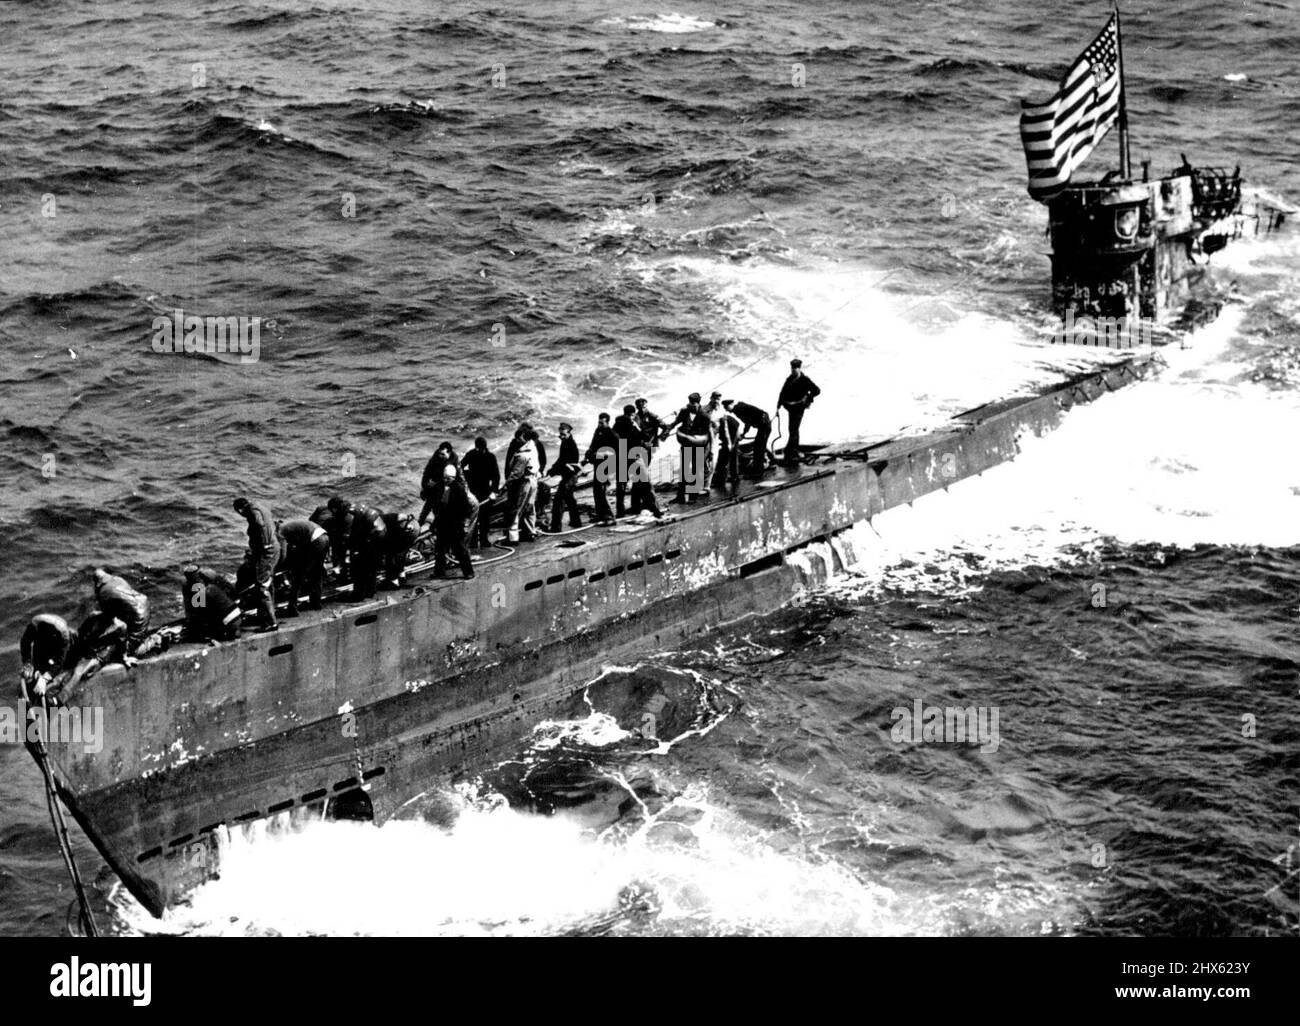 Die deutsche U-Boot-Flotte wurde von -- US Navy Ships vor Westafrika -- Eine Schleppleine wird auf dem Bug der gefangenen U-Boot-Marine durch ein Mitglied der Marine Boarding Party gesichert Guadalcanal, der die U-505 vier Tage lang schleppte, bis ein Navy-Schlepper ankam, um die 2.500 Meilen (4.000 km) zu übernehmen, die zum Marinestützpunkt auf Bermuda gebracht wurden. Das feindliche Schiff überschwemmt noch immer mittschiffs, aber das Navy-Personal hat es geschafft, weitere Überschwemmungen zu verhindern und das hochgezogen Stockfoto